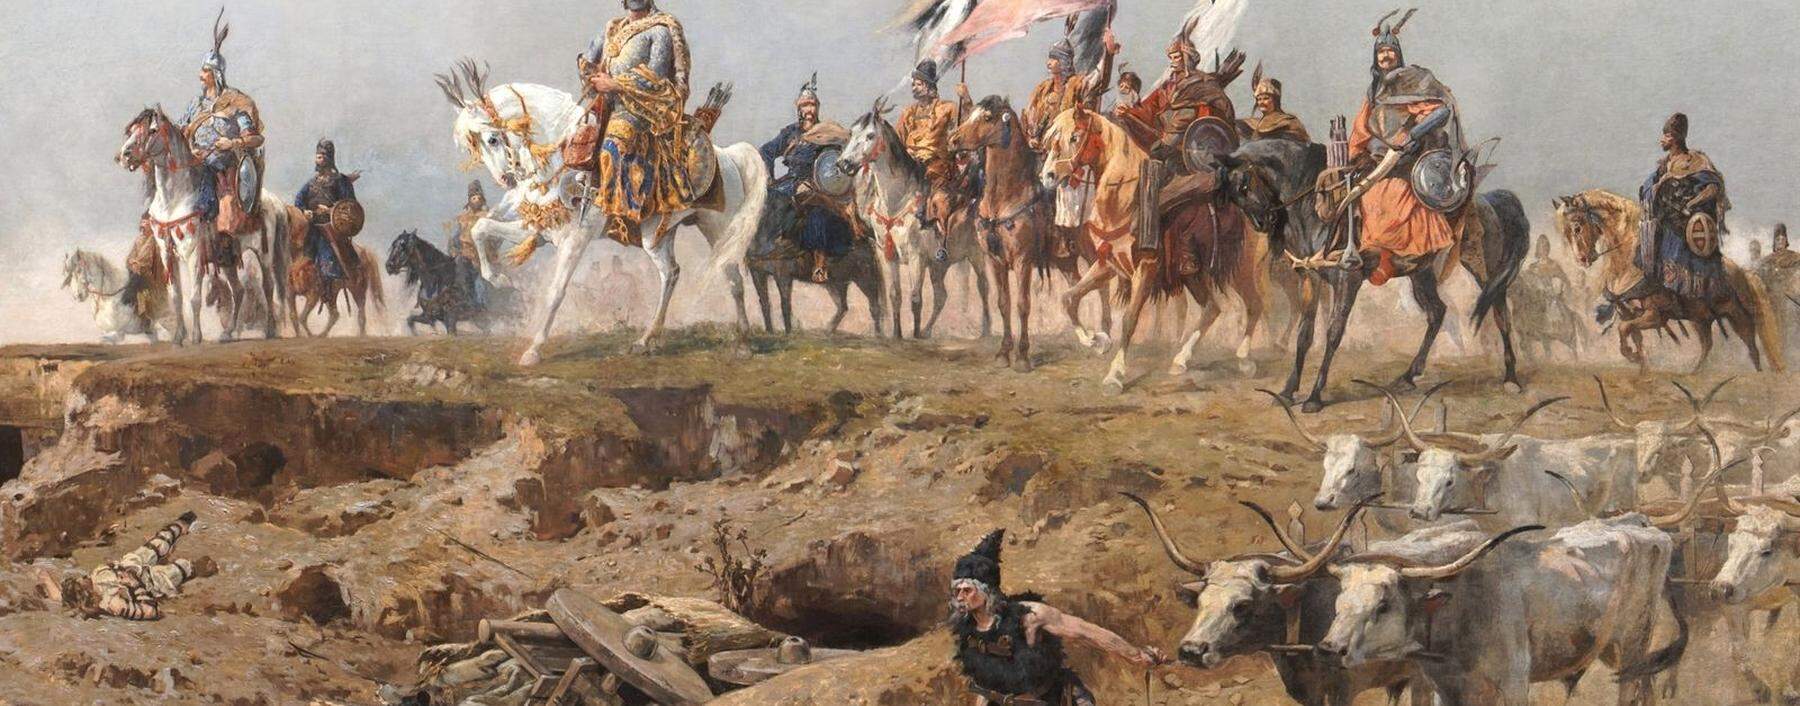 Großfürst Arpád führte sein ungarisches Volk um 900 in die pannonische Tiefebene. Ihre Kriegszüge machten Europa Angst. 